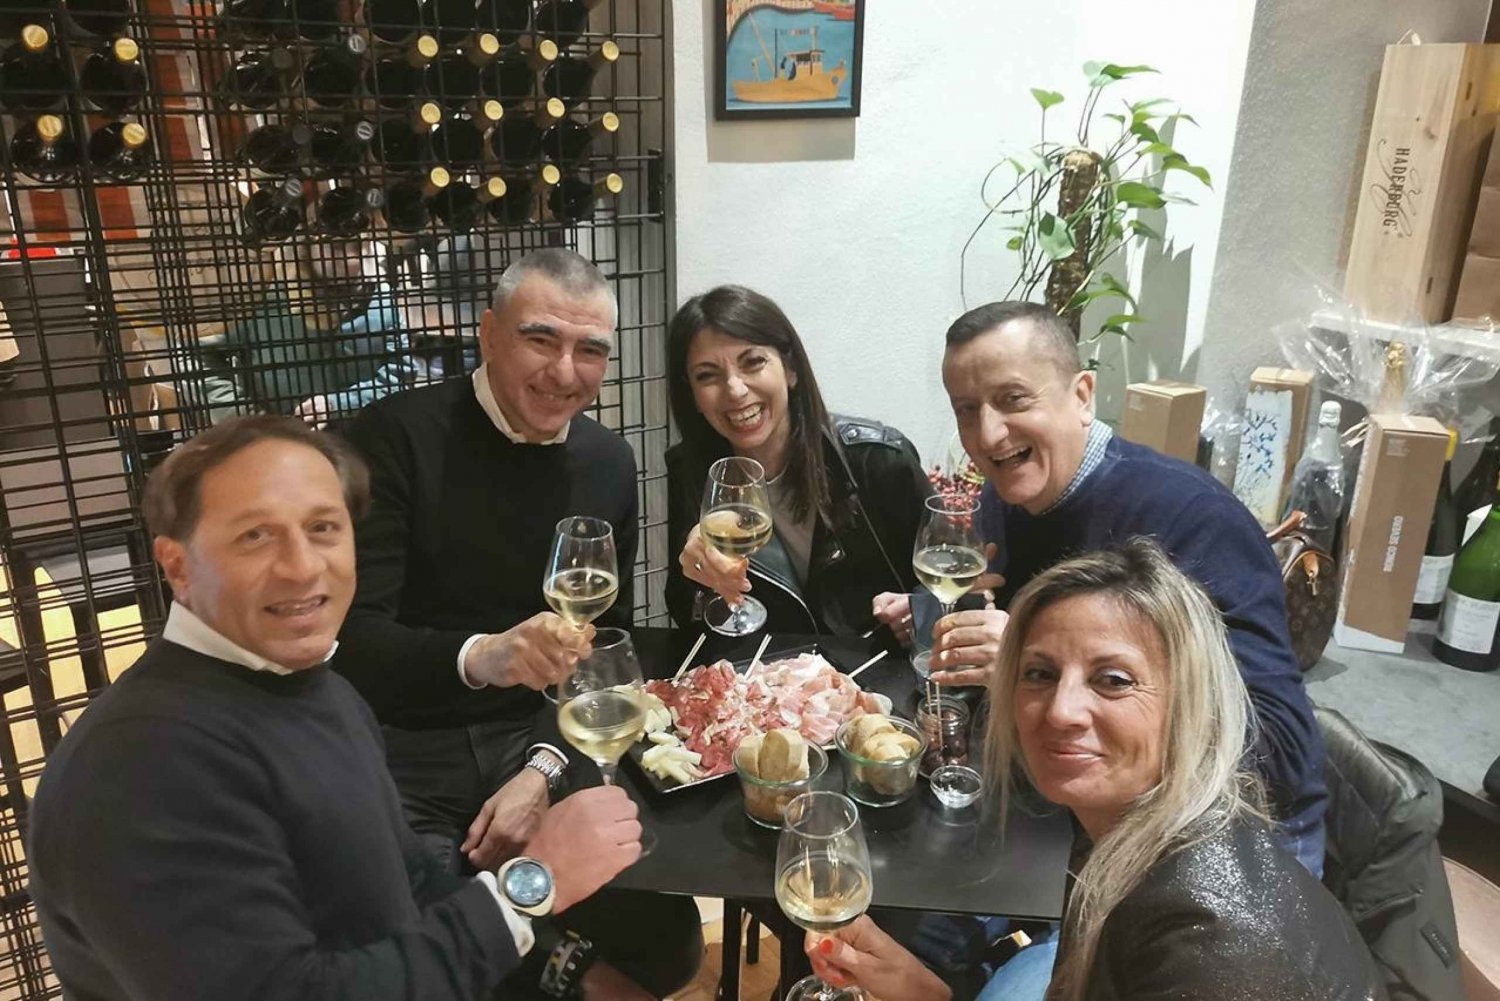 Trieste: Vinsmagning fra Istrien, Carso og Friuli terroirs